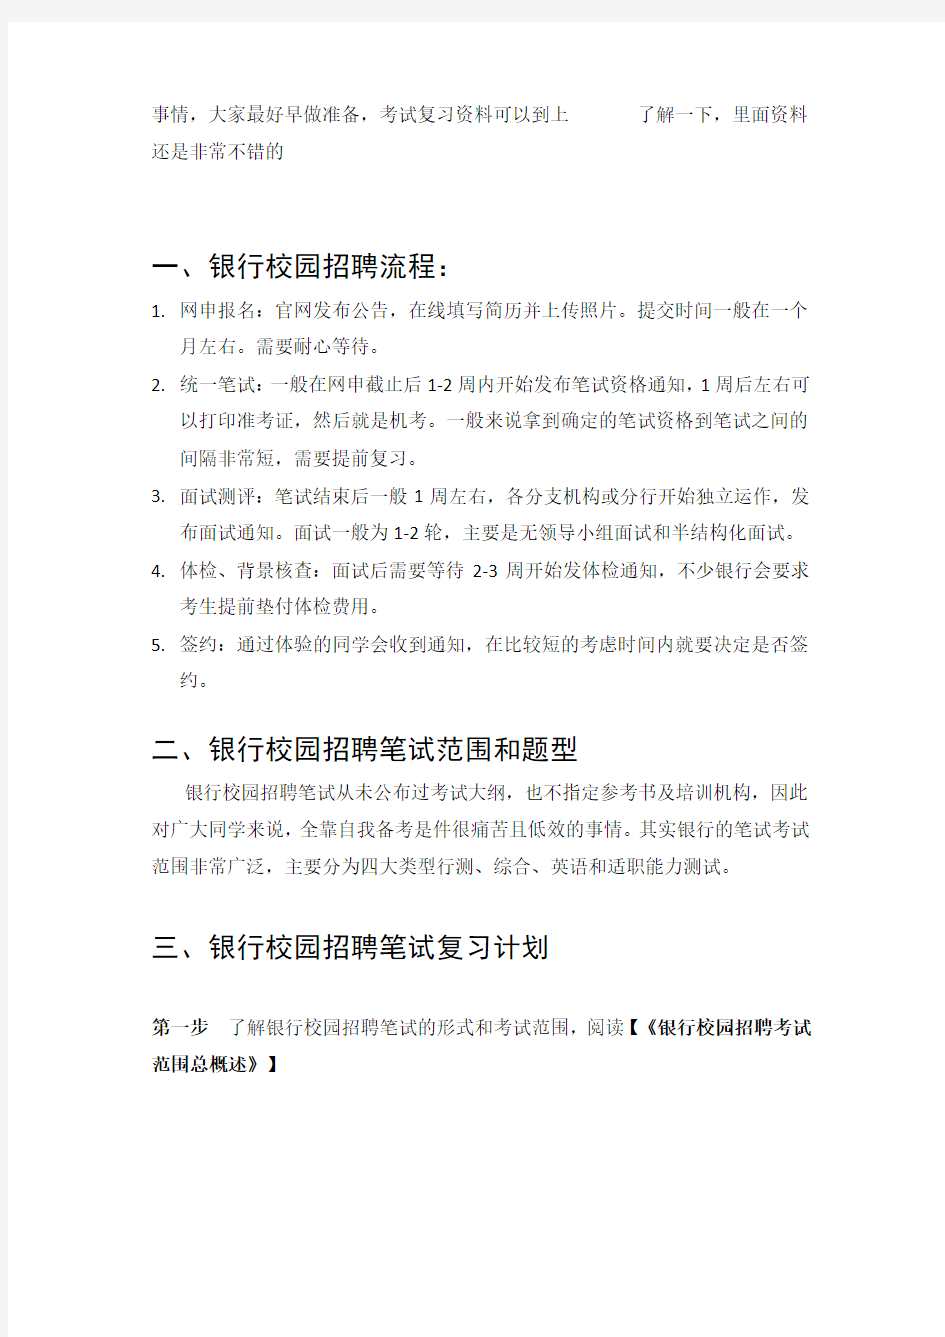 中国银行招聘考试笔试题目试卷历年考试真题